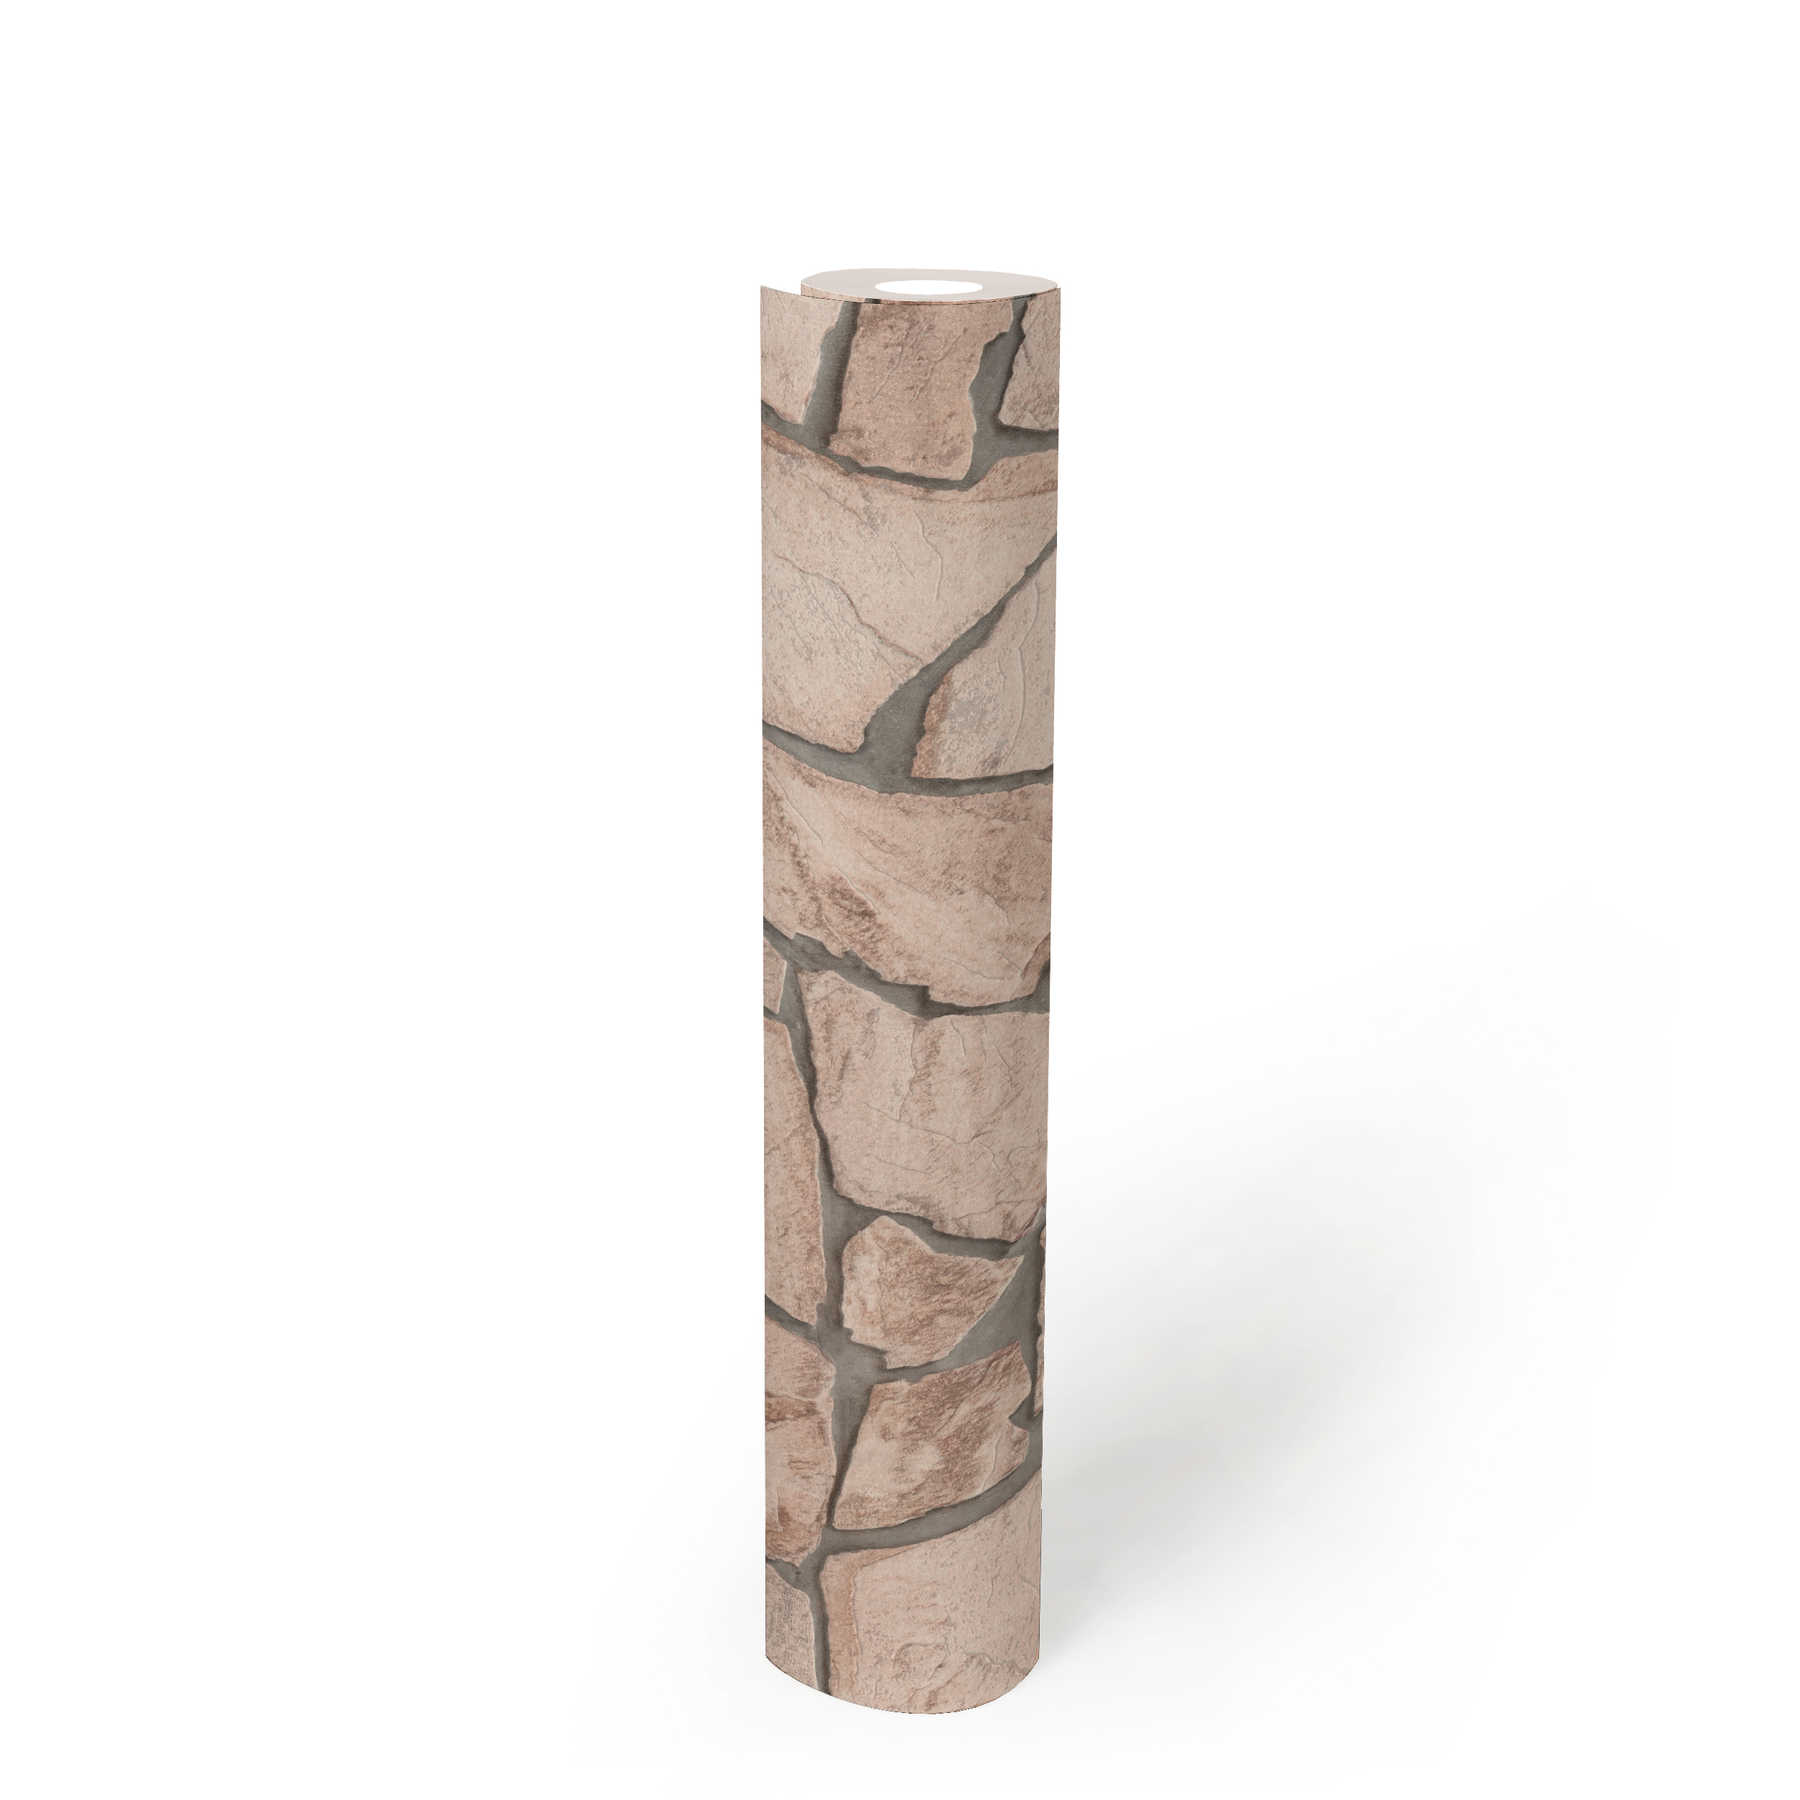             Steintapete 3D-Effekt, realistisches Natursteinmuster – Beige, Grau, Braun
        